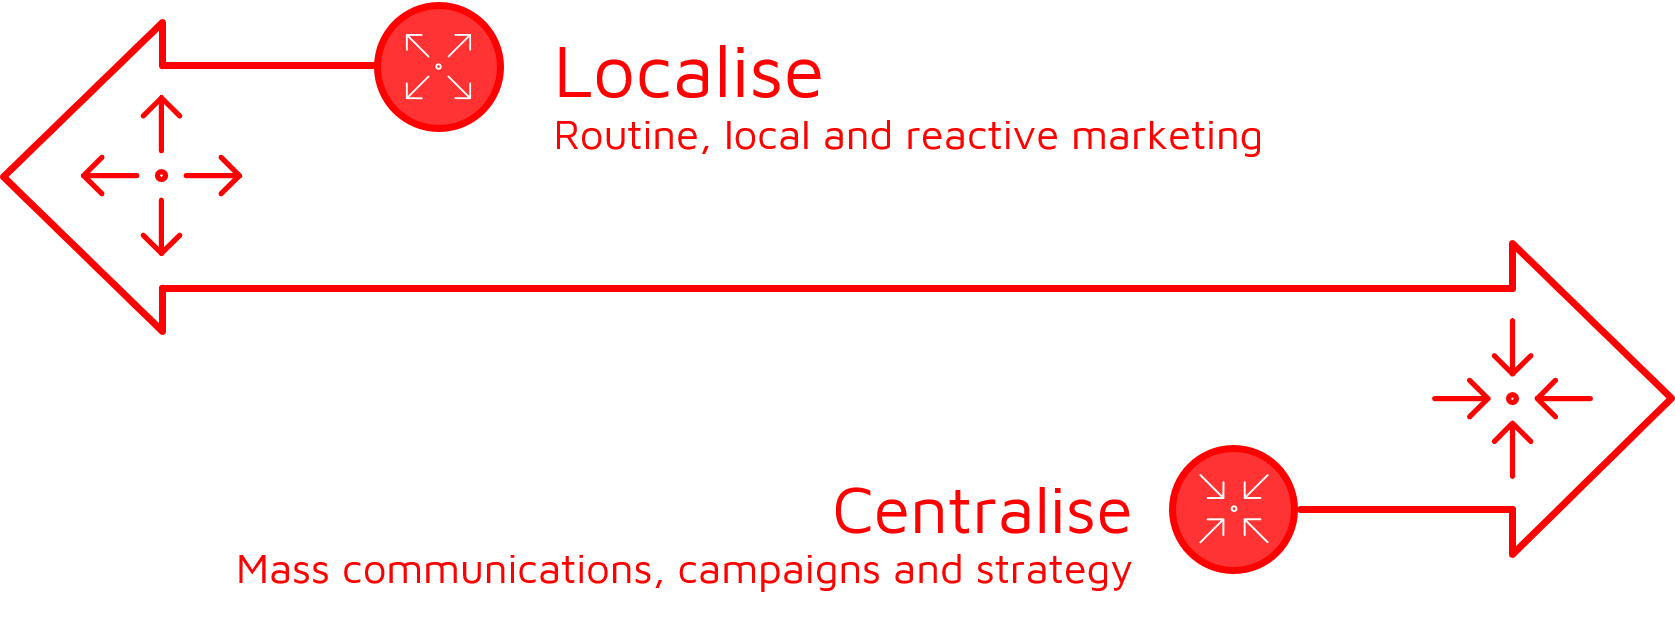 Central vs local marketing